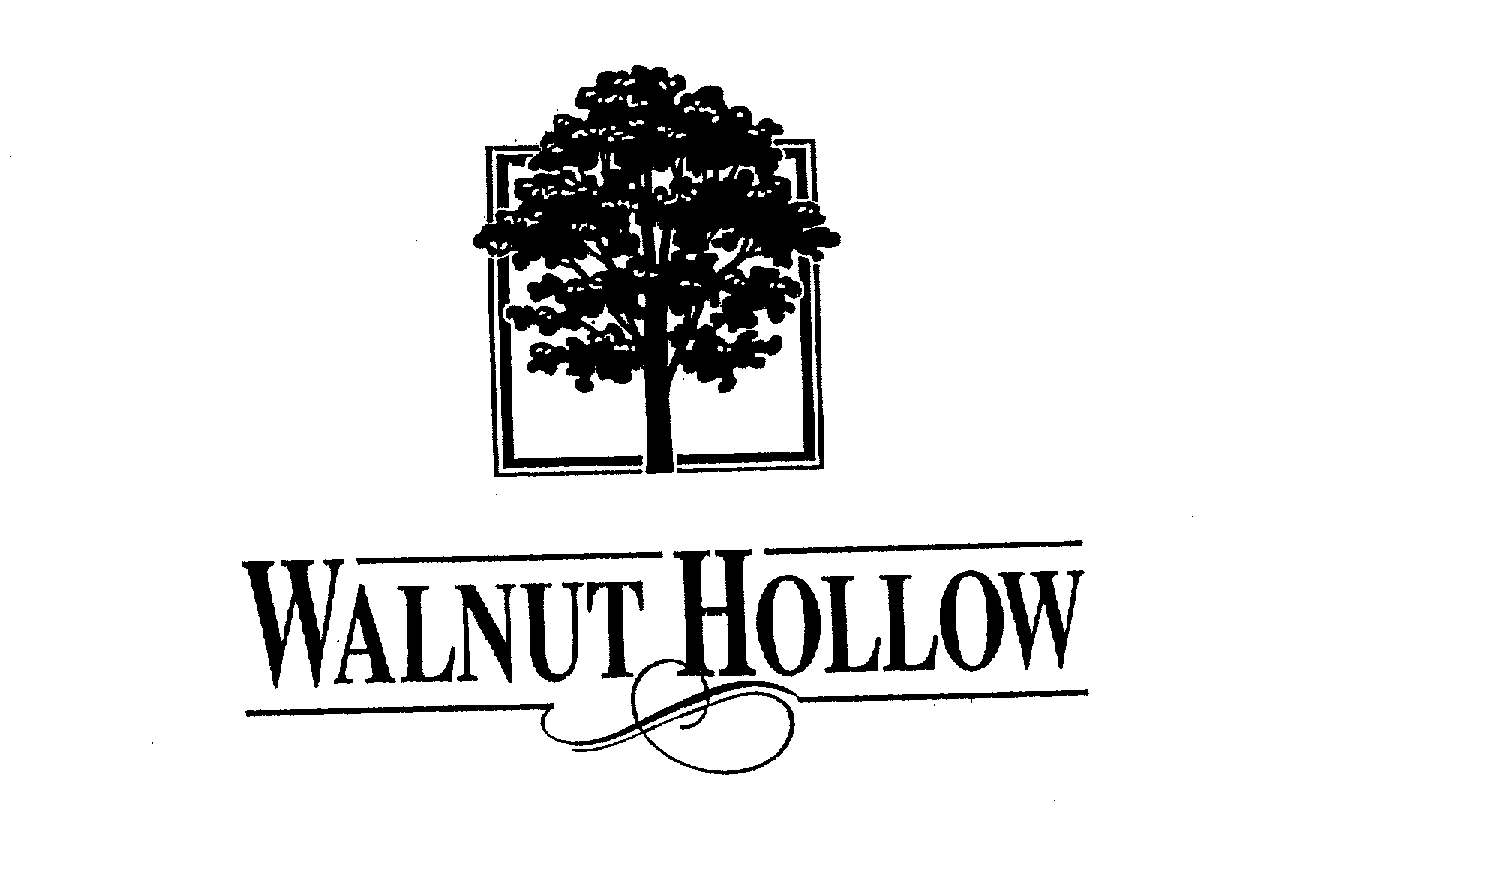 WALNUT HOLLOW